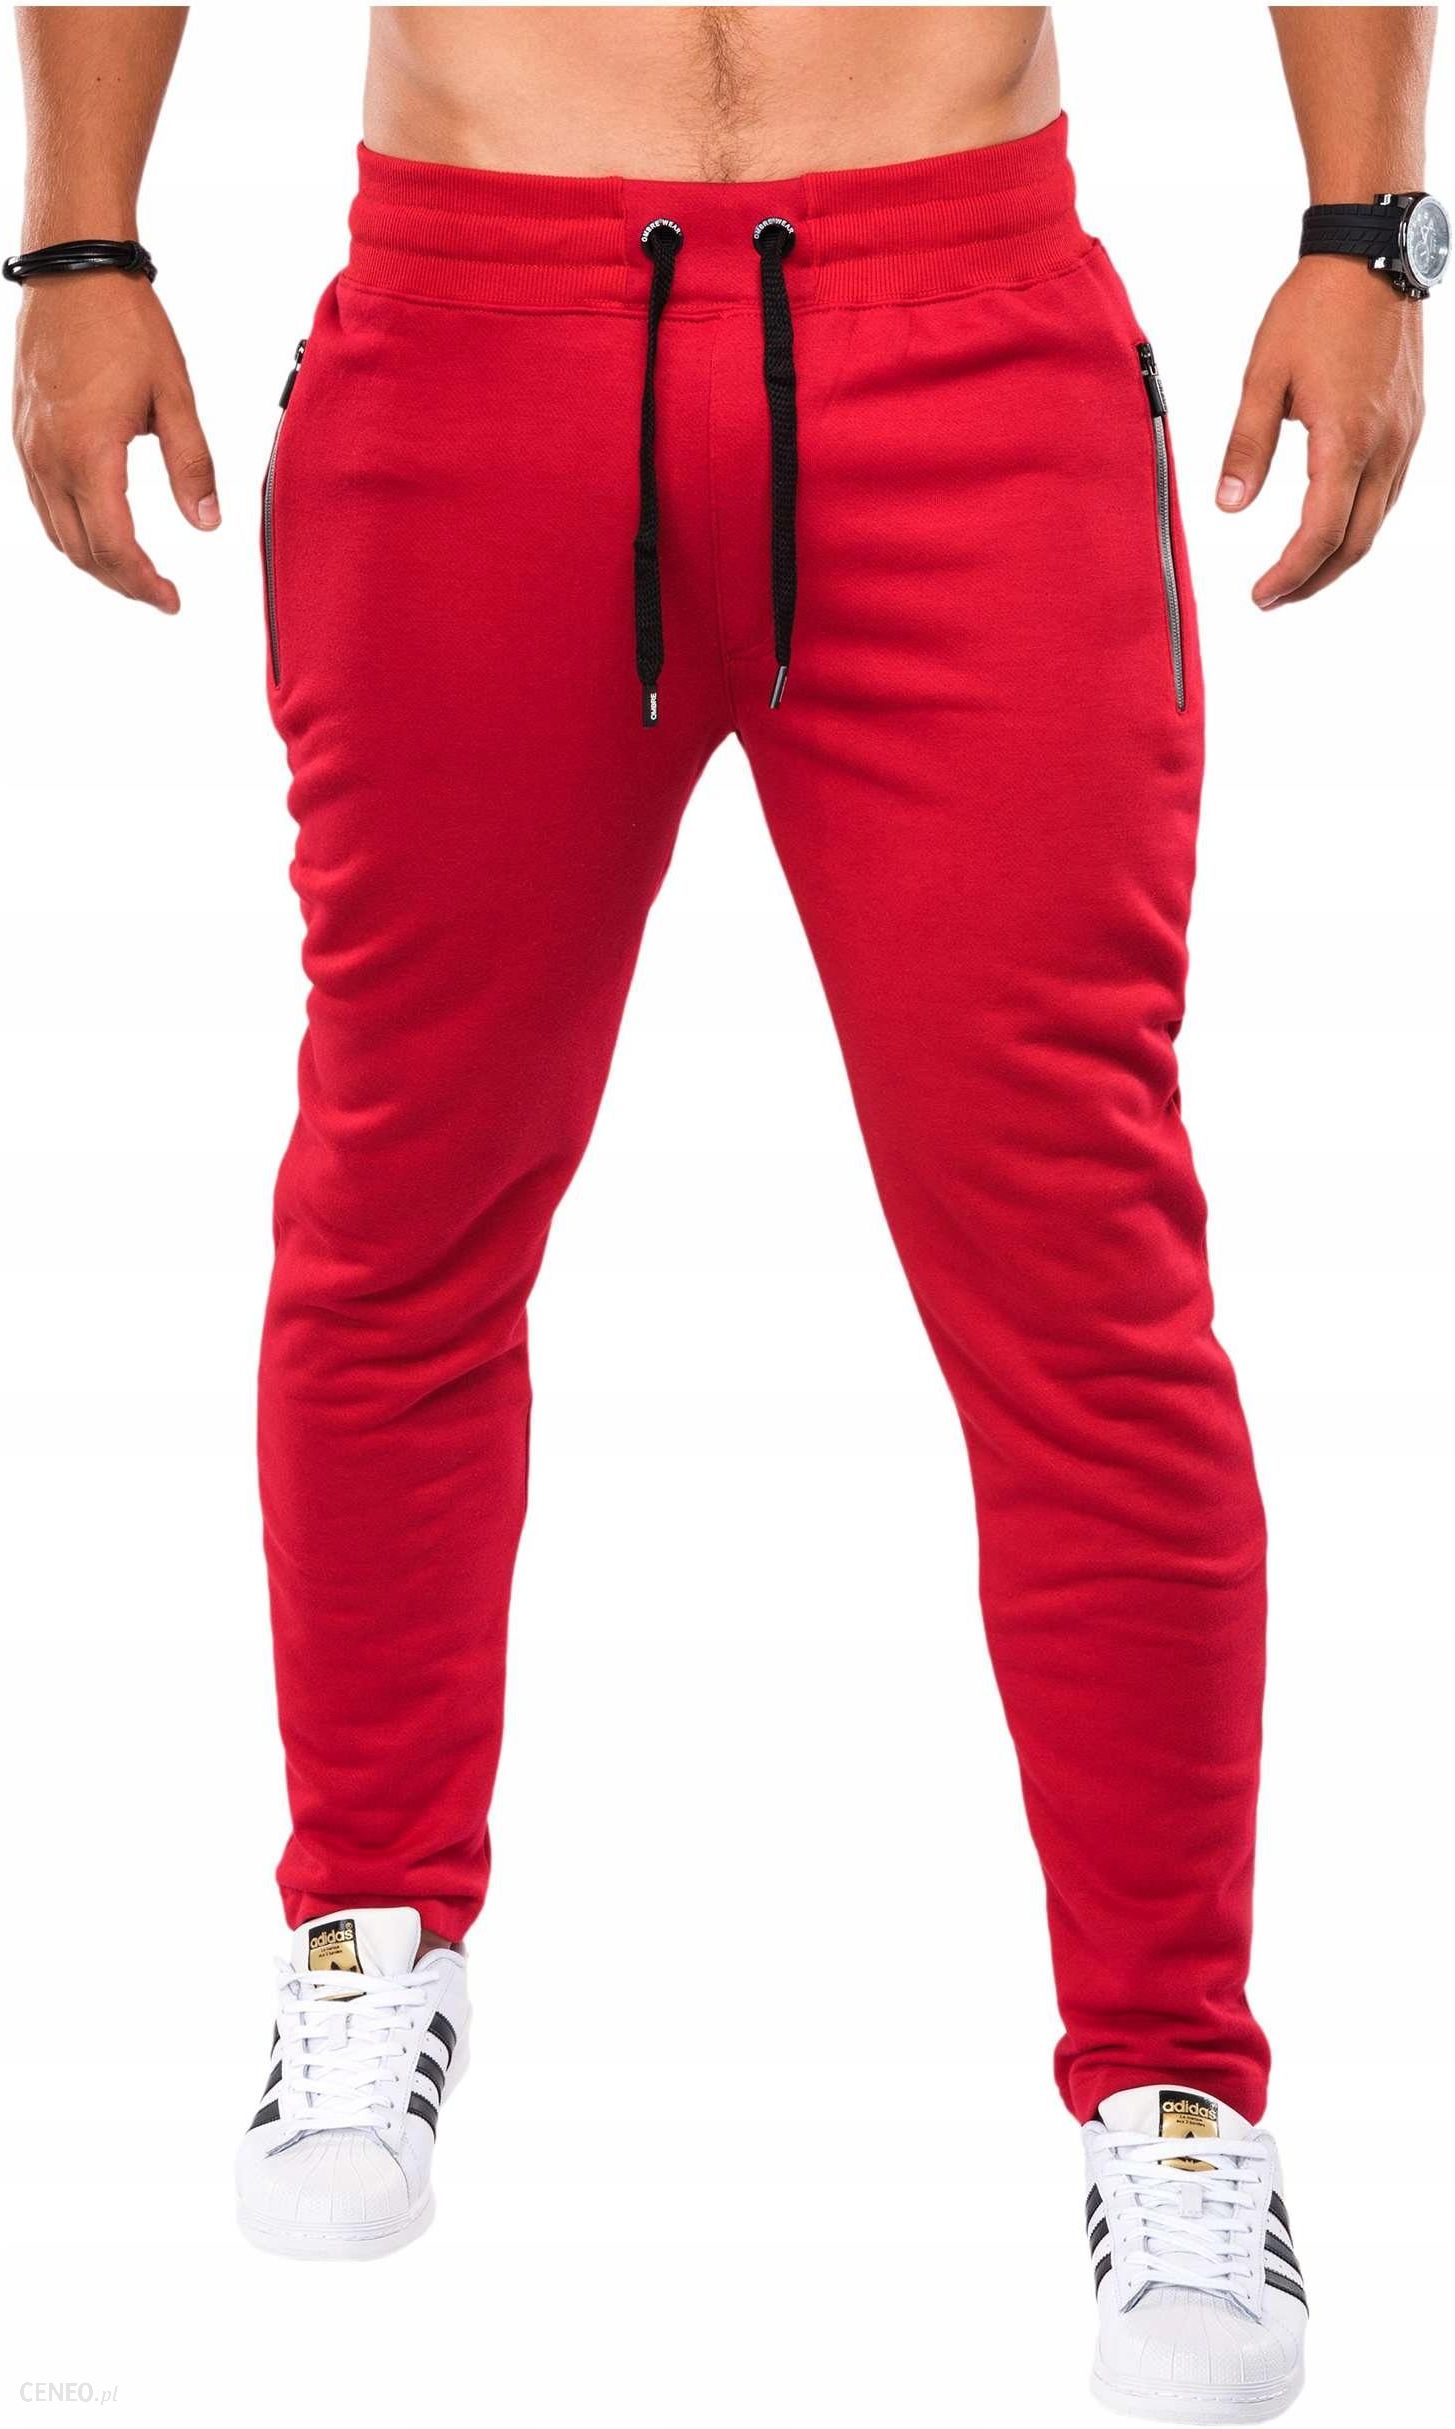 Купить недорогие штаны мужские. Трико мужское Kappa красные. Красные штаны мужские. Спортивные штаны мужские. Красные брюки мужские.